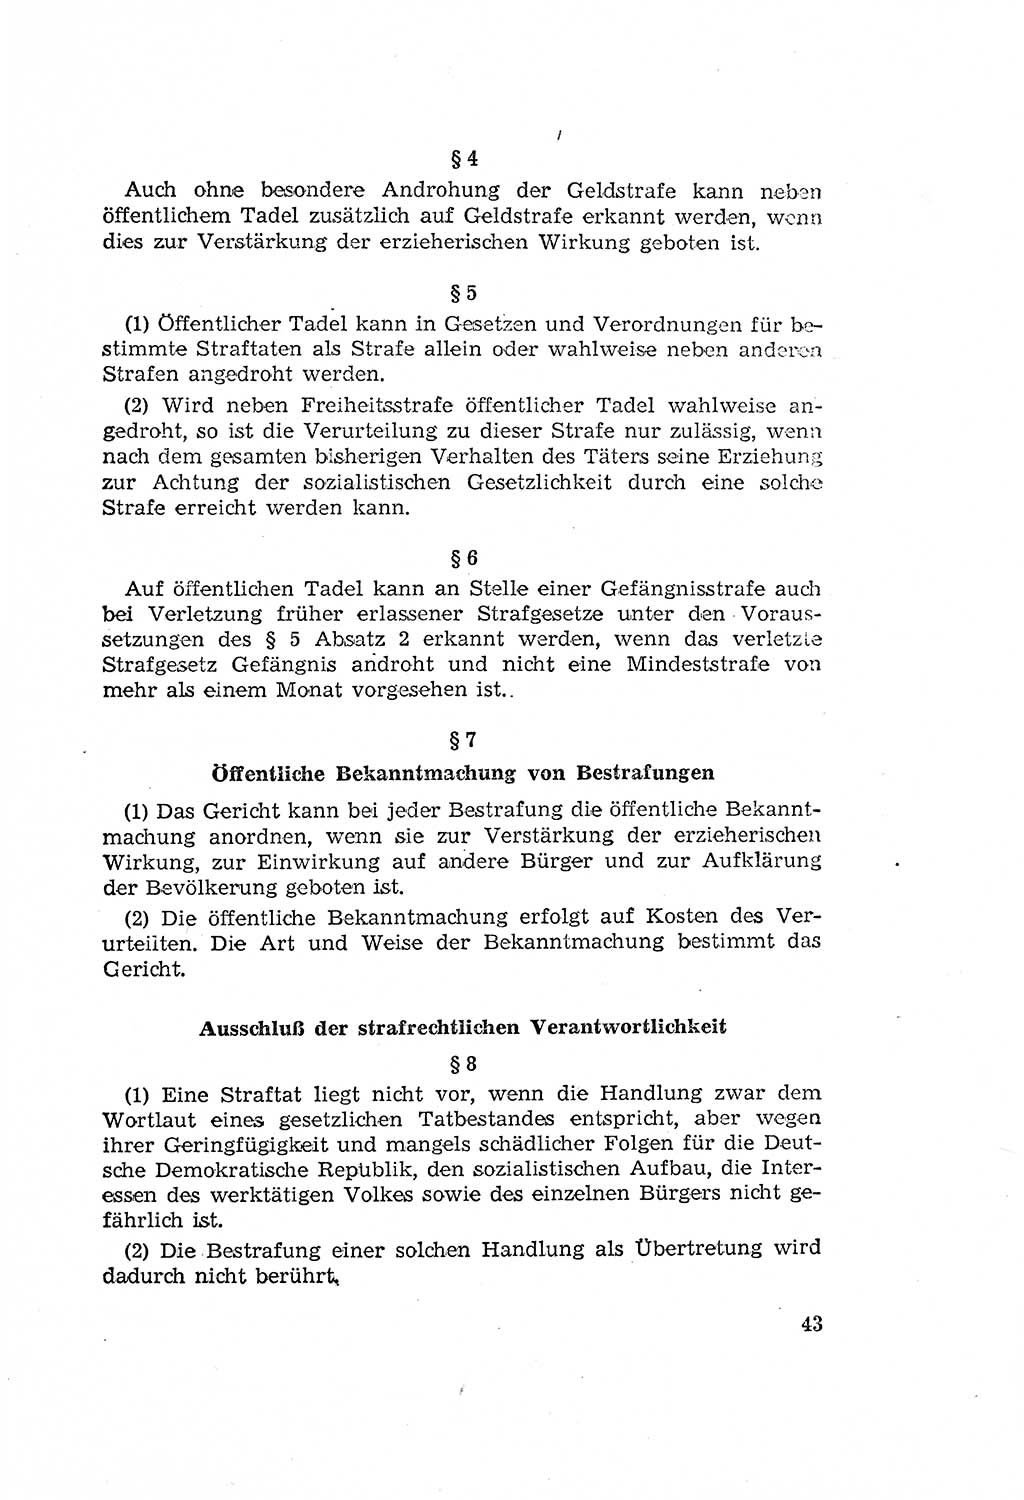 Zum Erlaß des Gesetzes zur Ergänzung des Strafgesetzbuches (StGB), Strafergänzungsgesetz (StEG) [Deutsche Demokratische Republik (DDR)] 1957, Seite 43 (StGB StEG DDR 1957, S. 43)